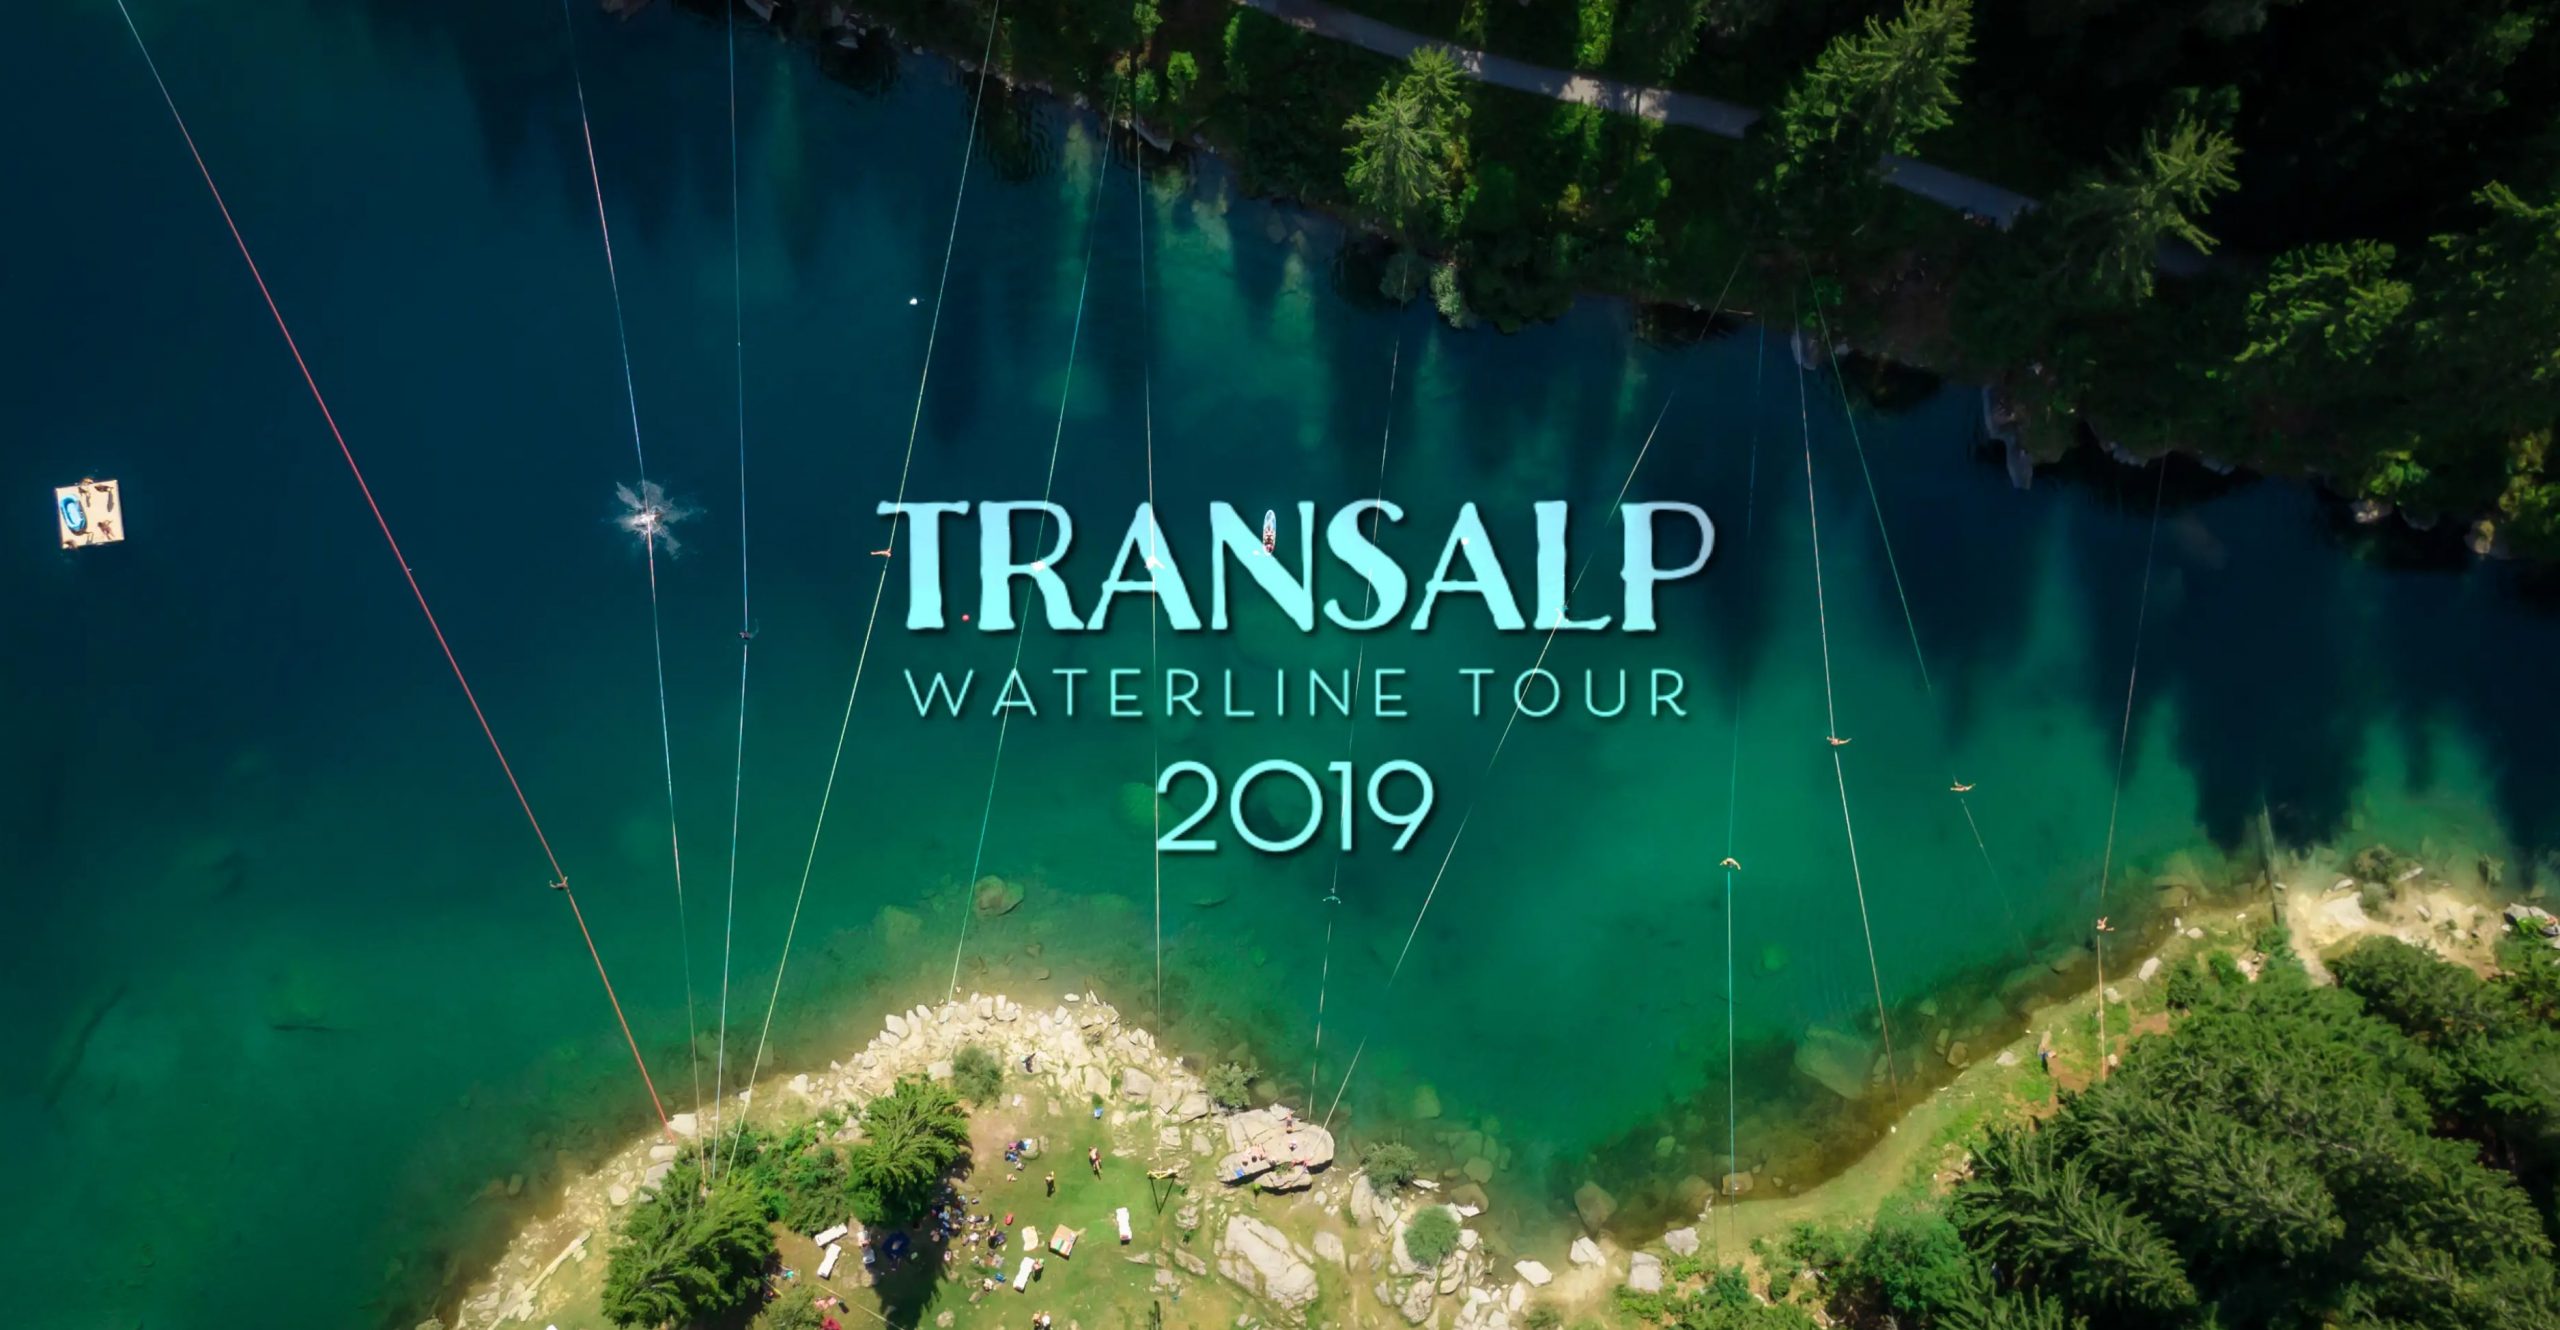 Transalp Waterline Tour